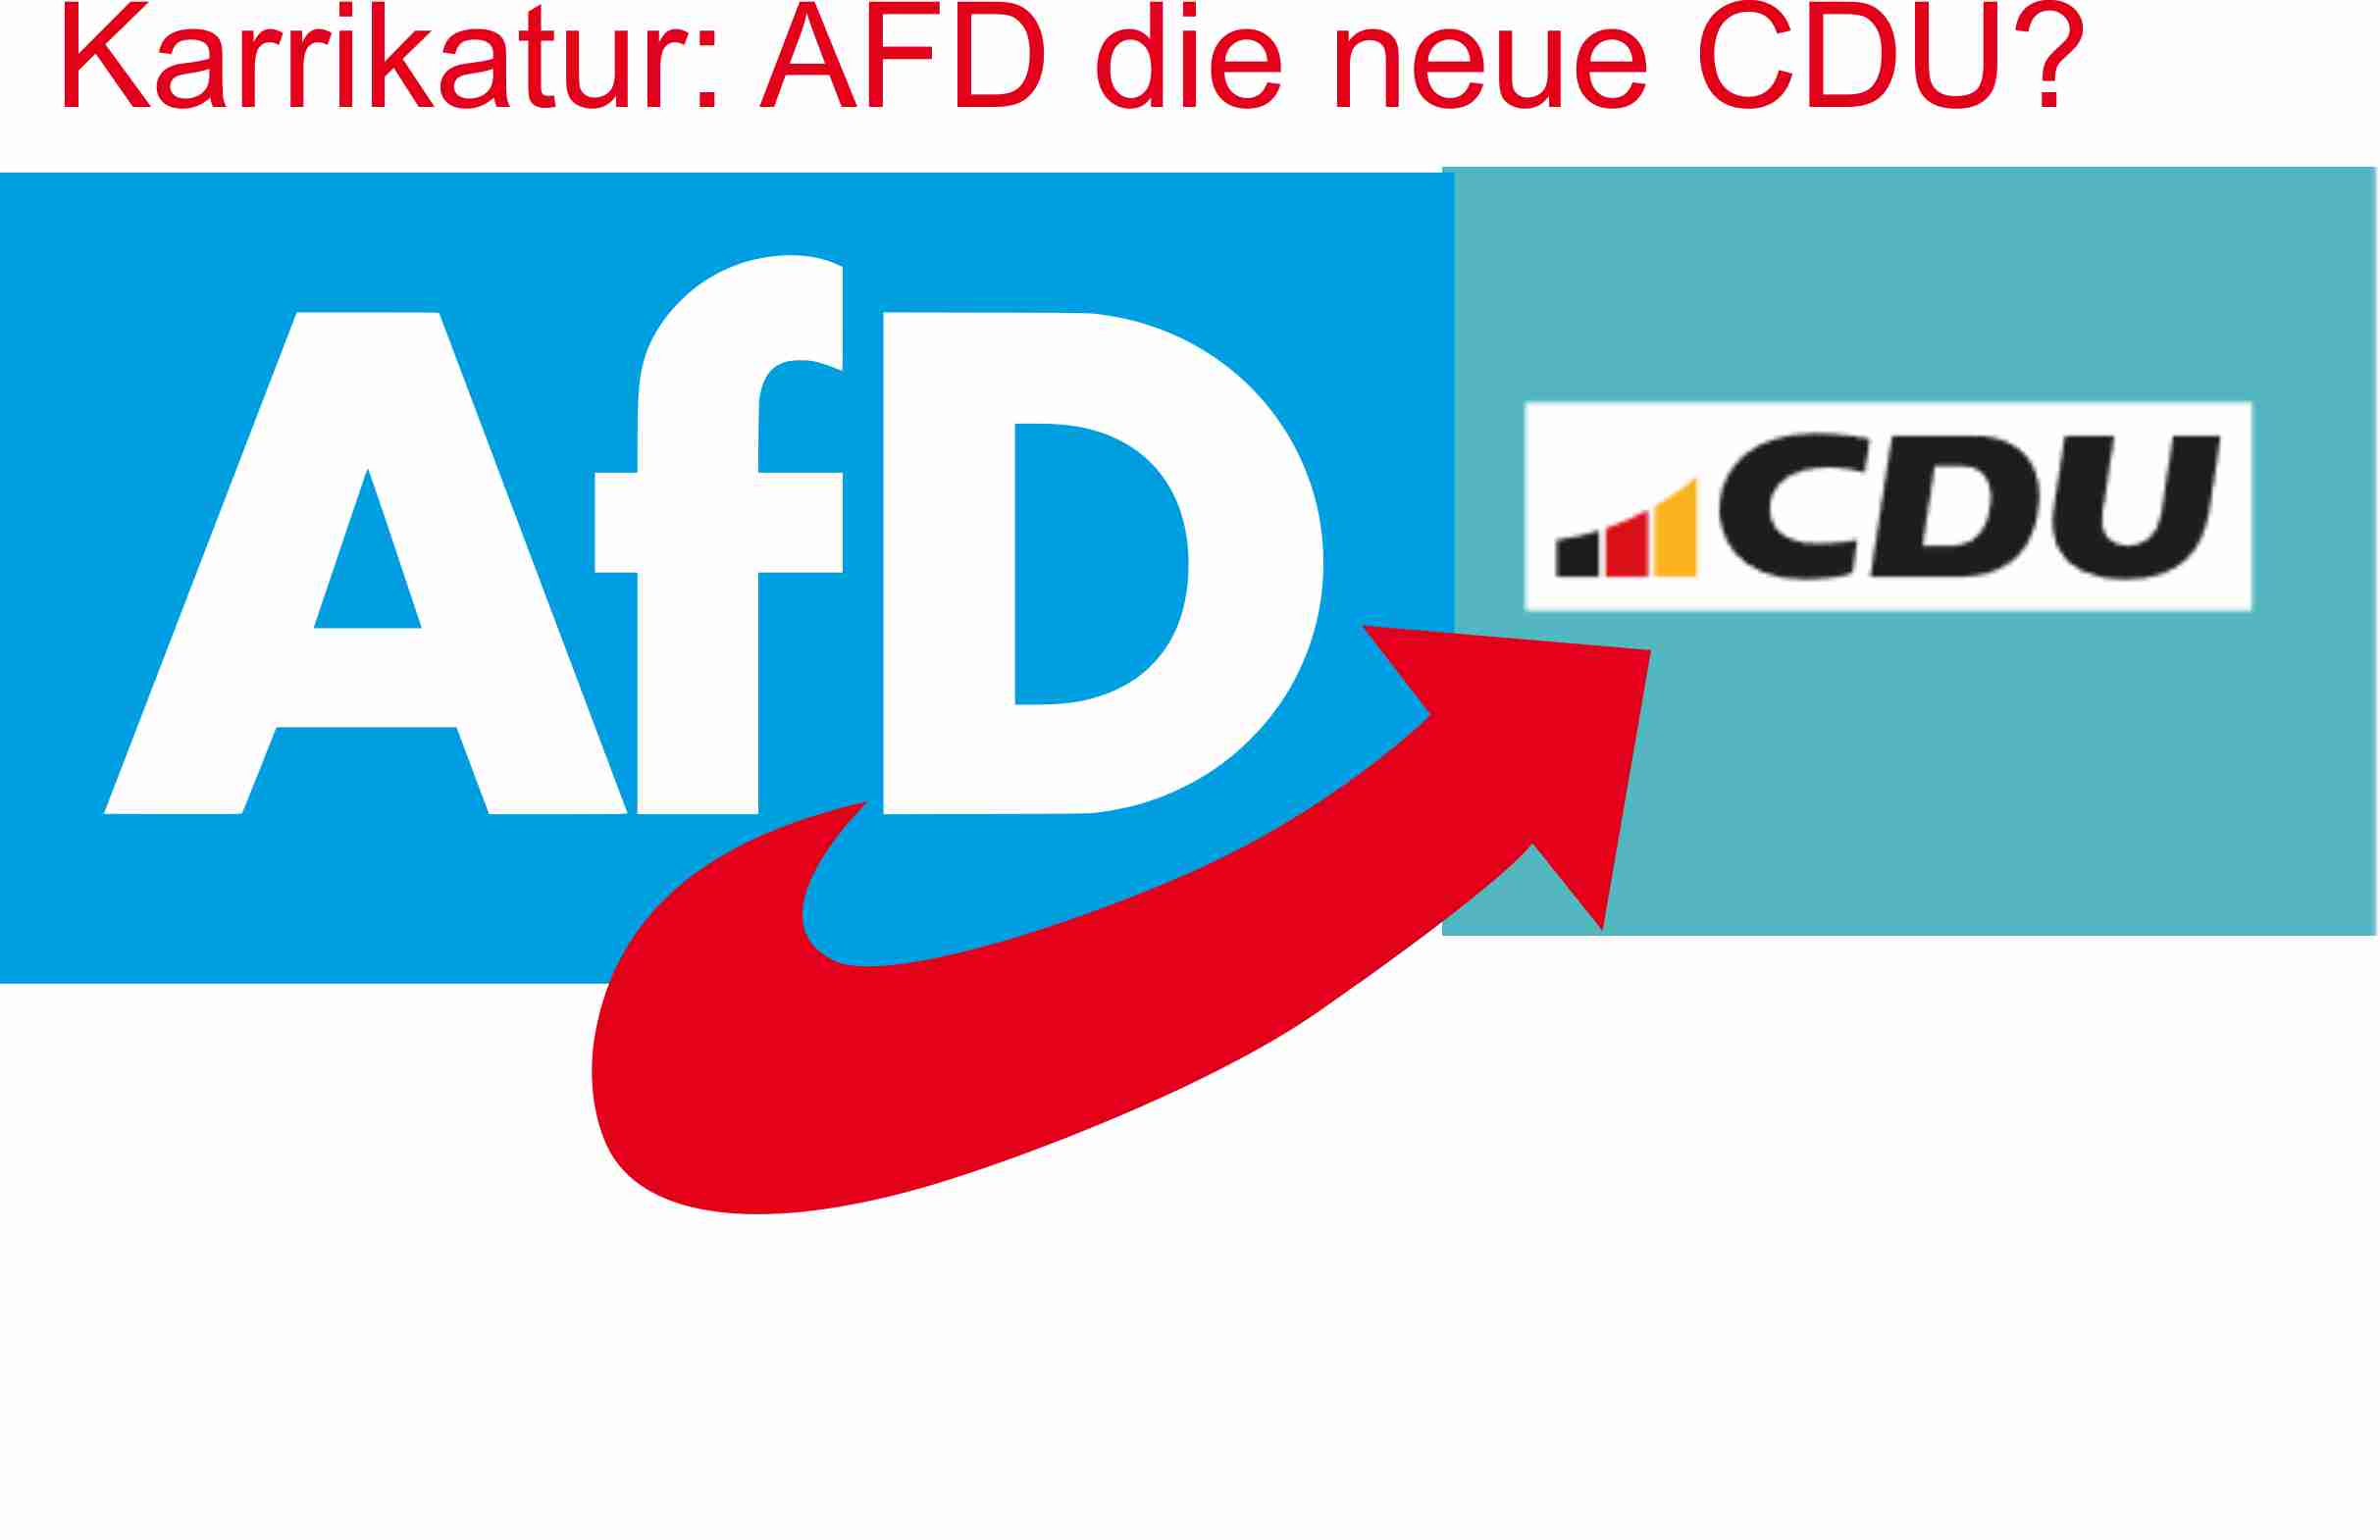 Karikatur von AFD-Logo, welches verschoben wurde und das neue Logo der CDU mit blauen Grund überlappt, wodurch der rote untere Pfeil der AFD auf die Buchstaben CDU zeigt.